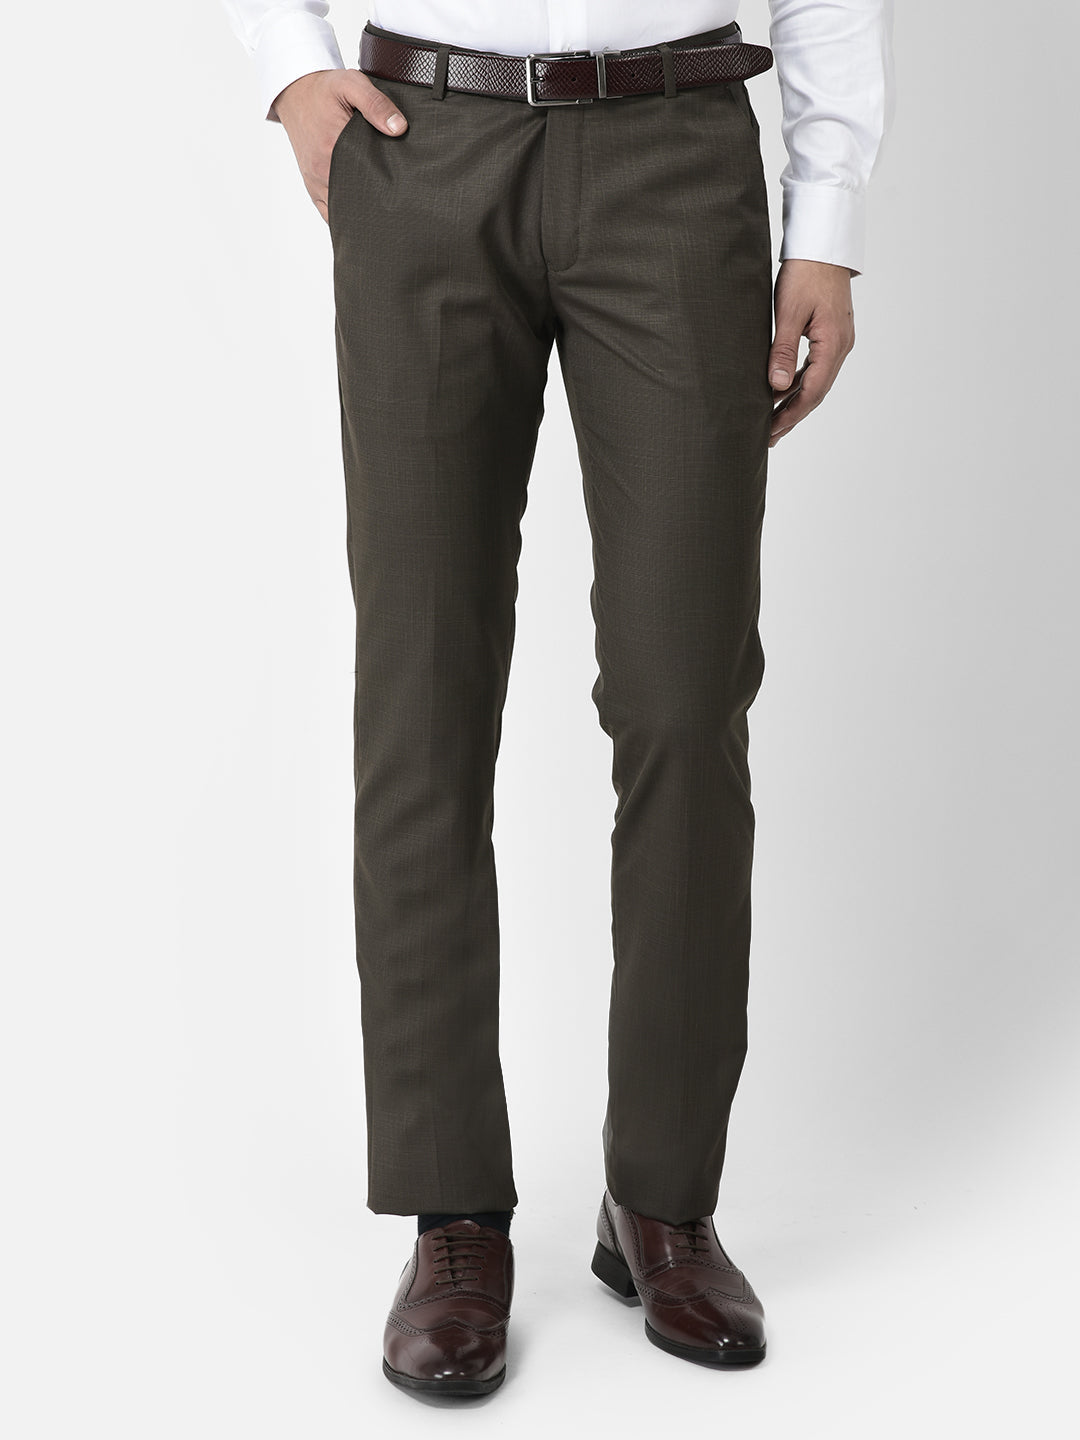 ASOS DESIGN skinny smart trousers in chocolate brown  ASOS